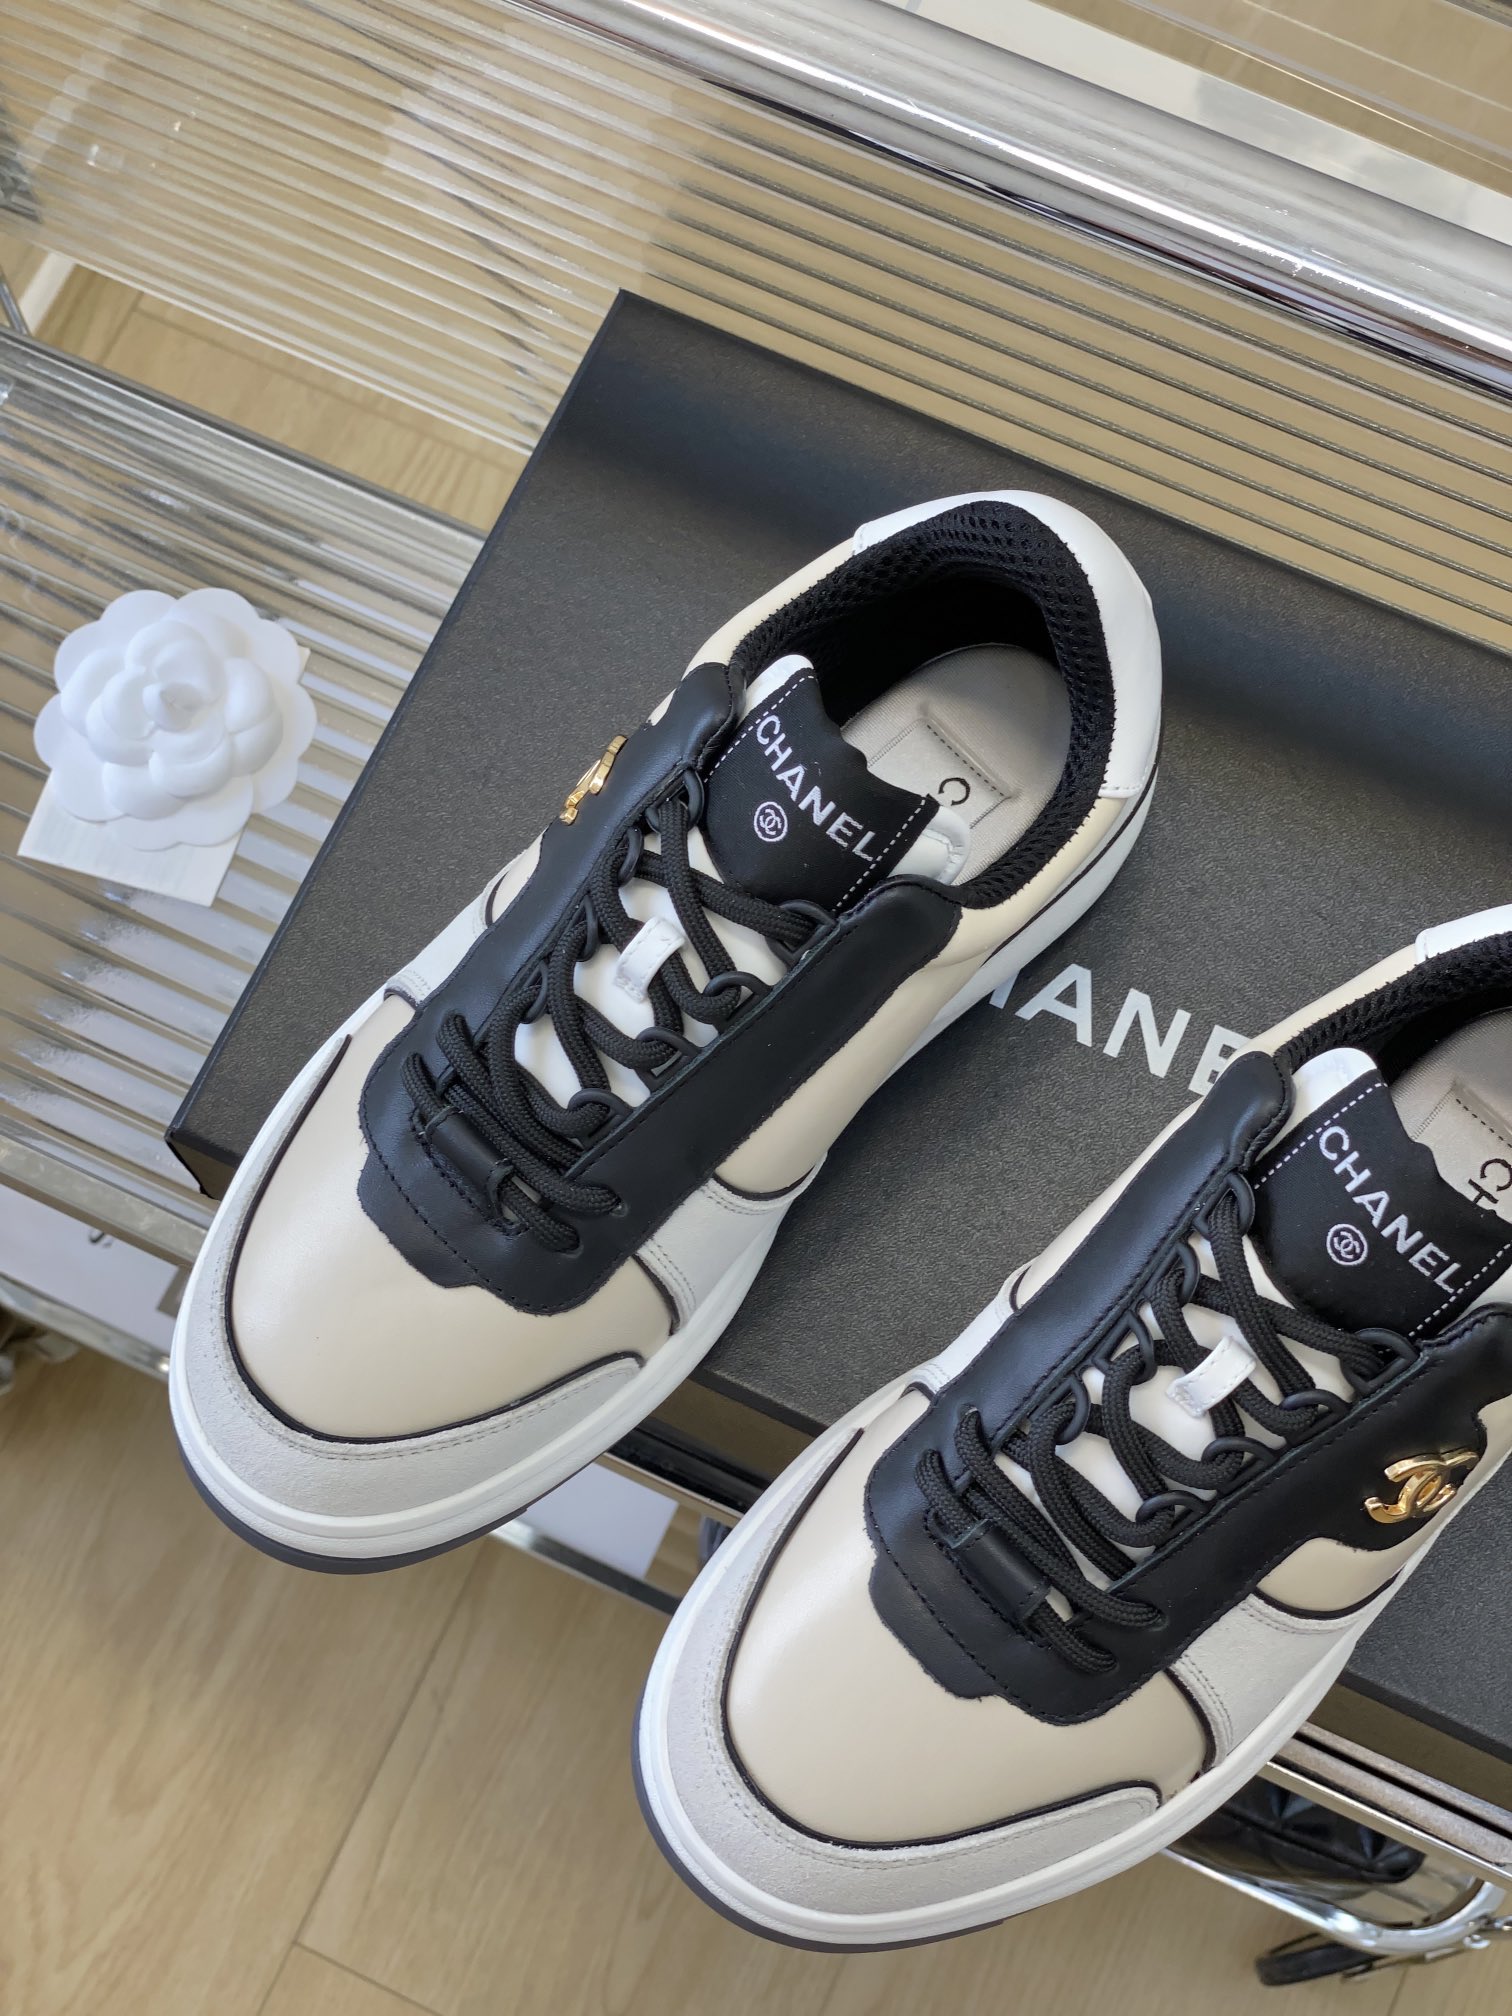 高仿香奈儿女鞋 Chanel 香奈儿全皮系列 23早秋新款熊猫板鞋 